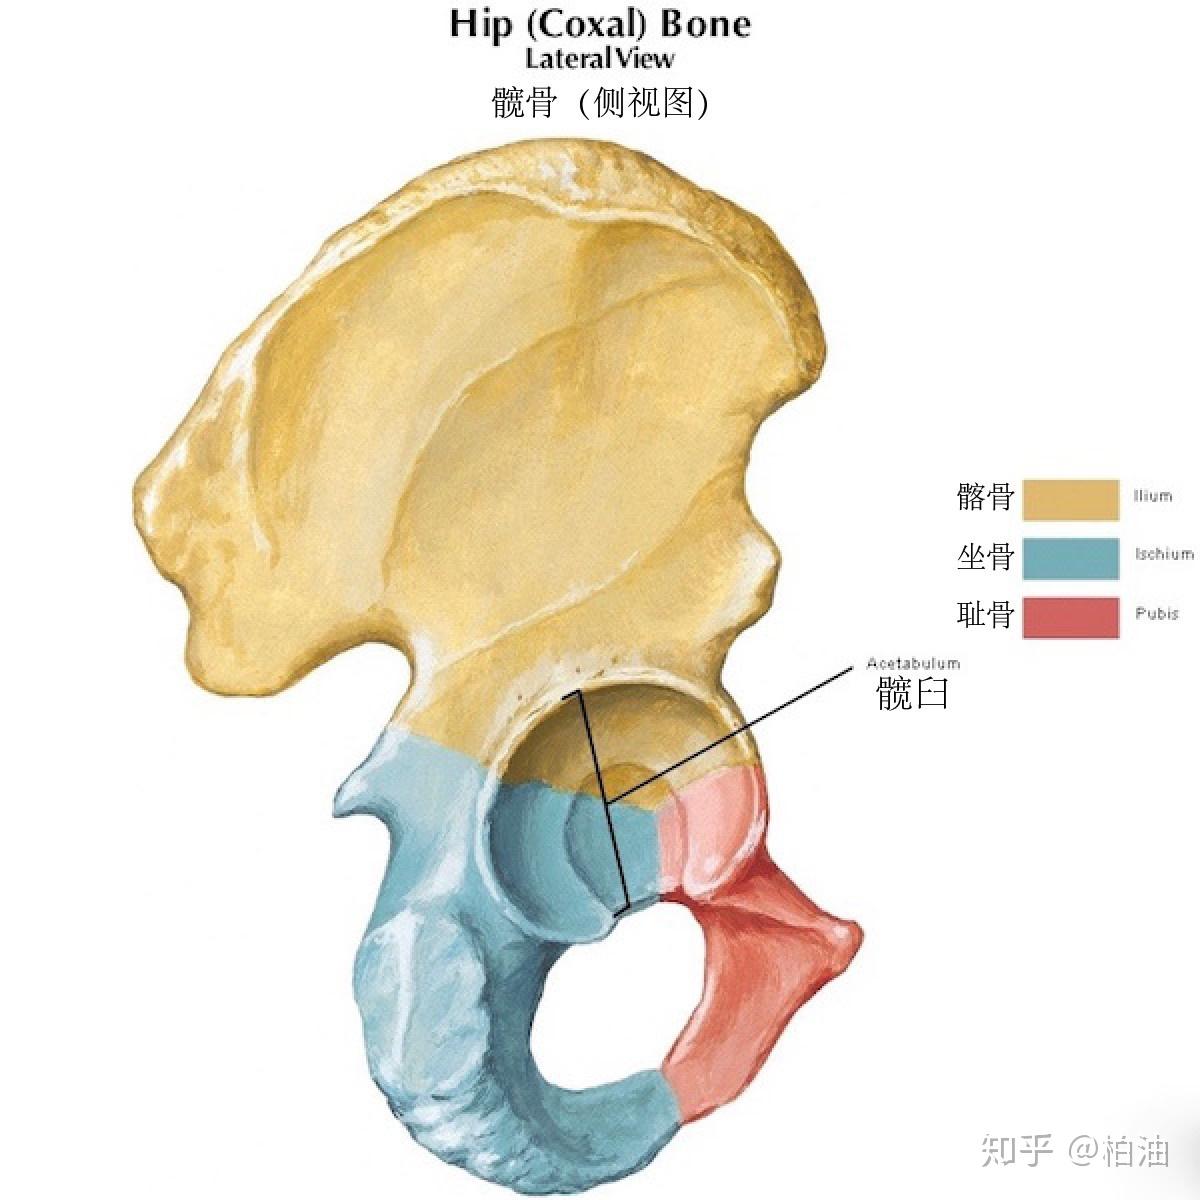 61 骨盆的韧带和关节-基础医学-医学